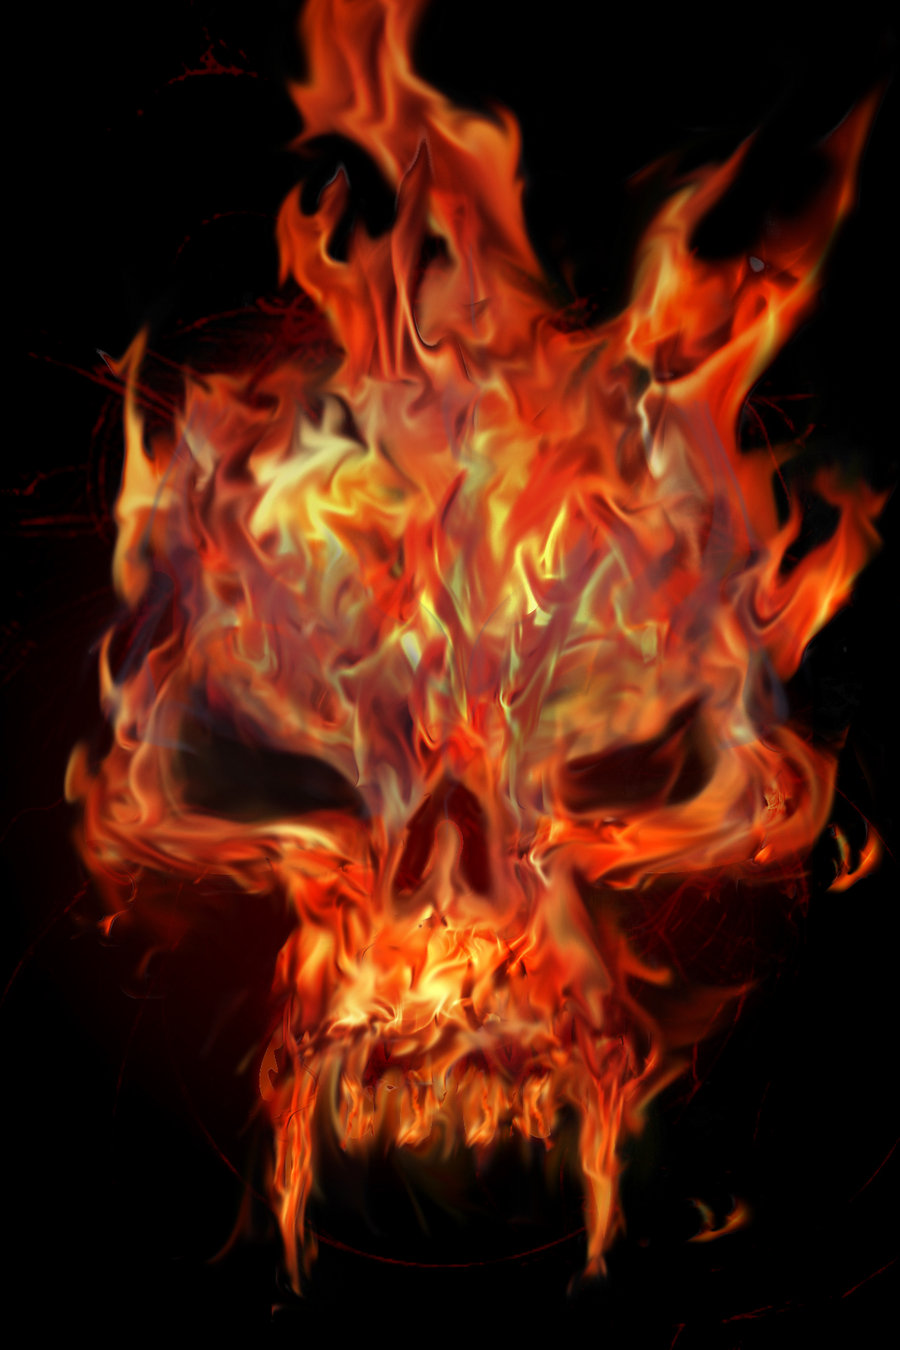 燃えるような頭蓋骨の壁紙,火炎,火,熱,オレンジ,たき火